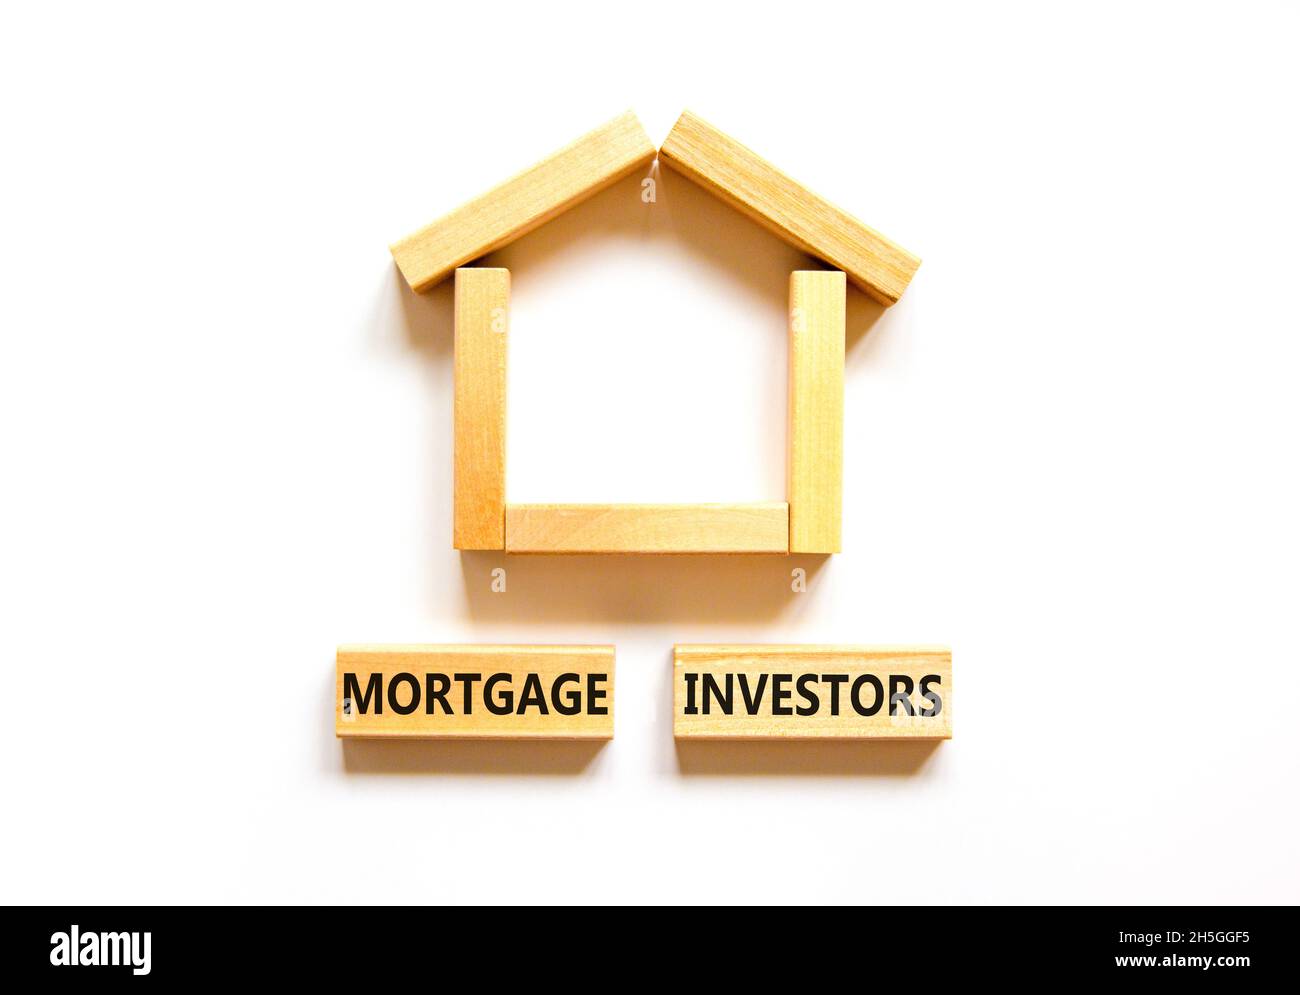 Symbole des investisseurs hypothécaires.Mots-clés 'Mortgage Investors' sur des blocs de bois près de la maison en bois miniature.Magnifique fond blanc.Affaires, mort Banque D'Images